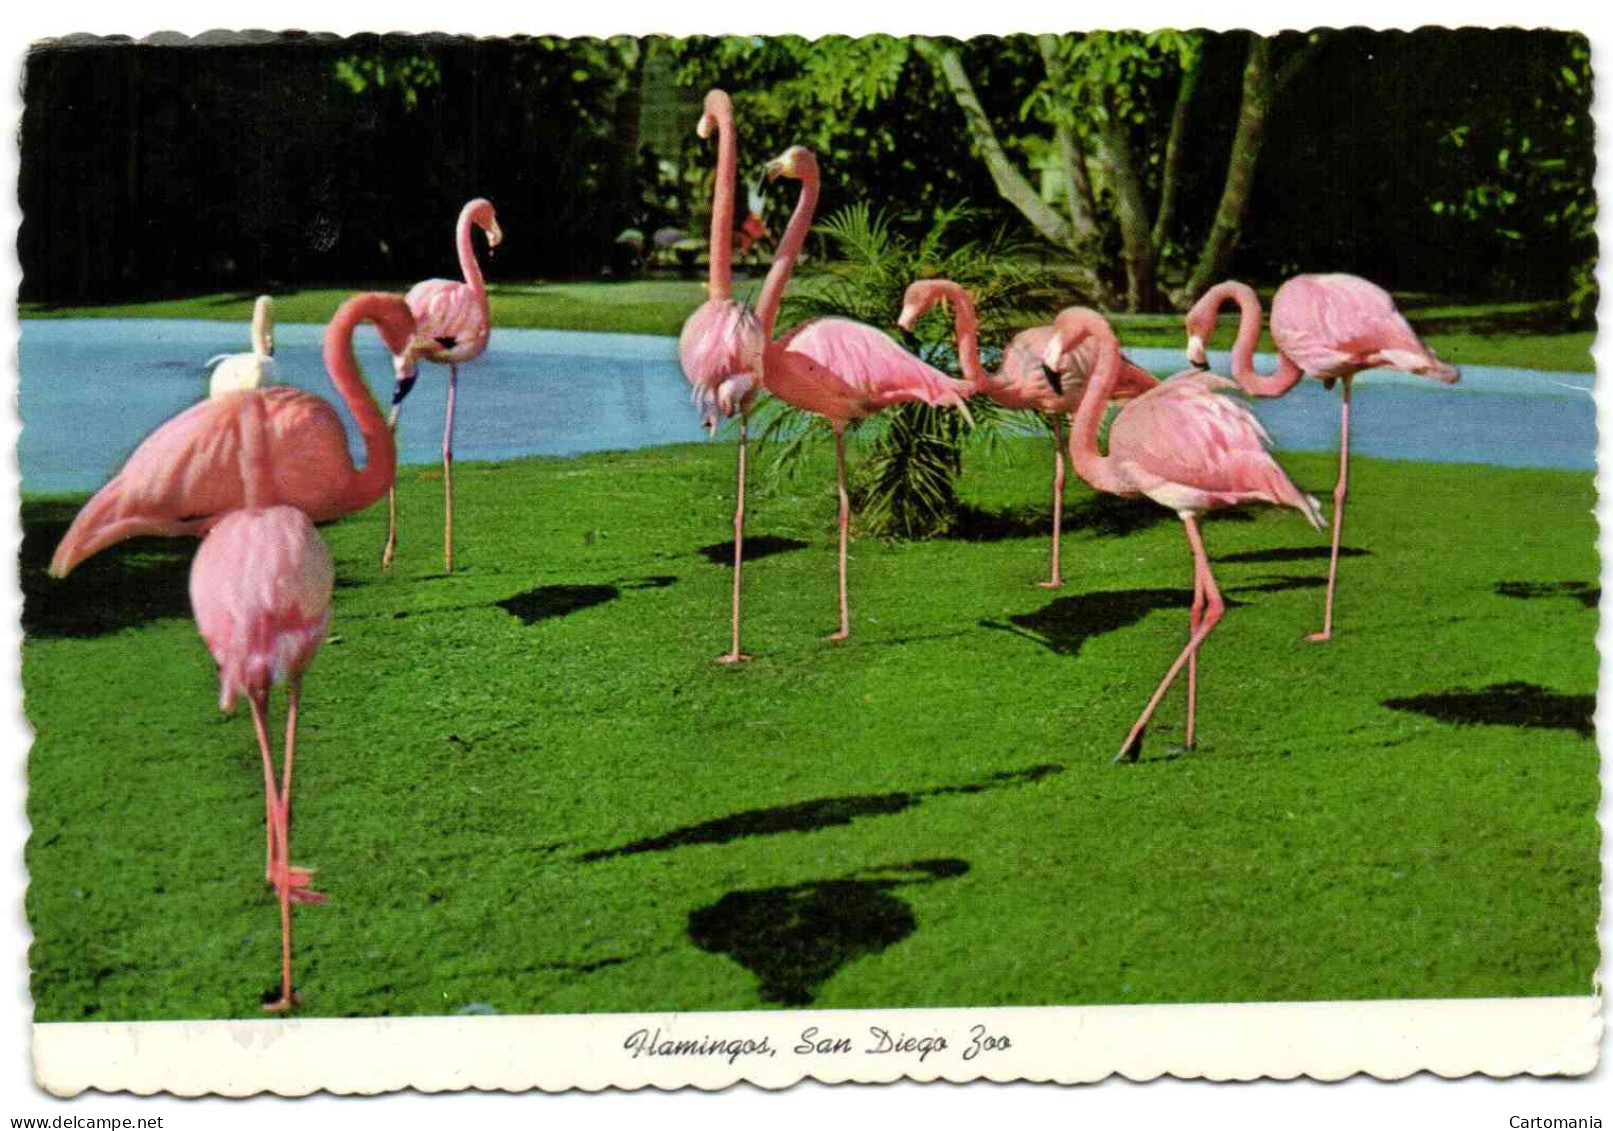 San Diego Zoo - Flamingos - San Diego